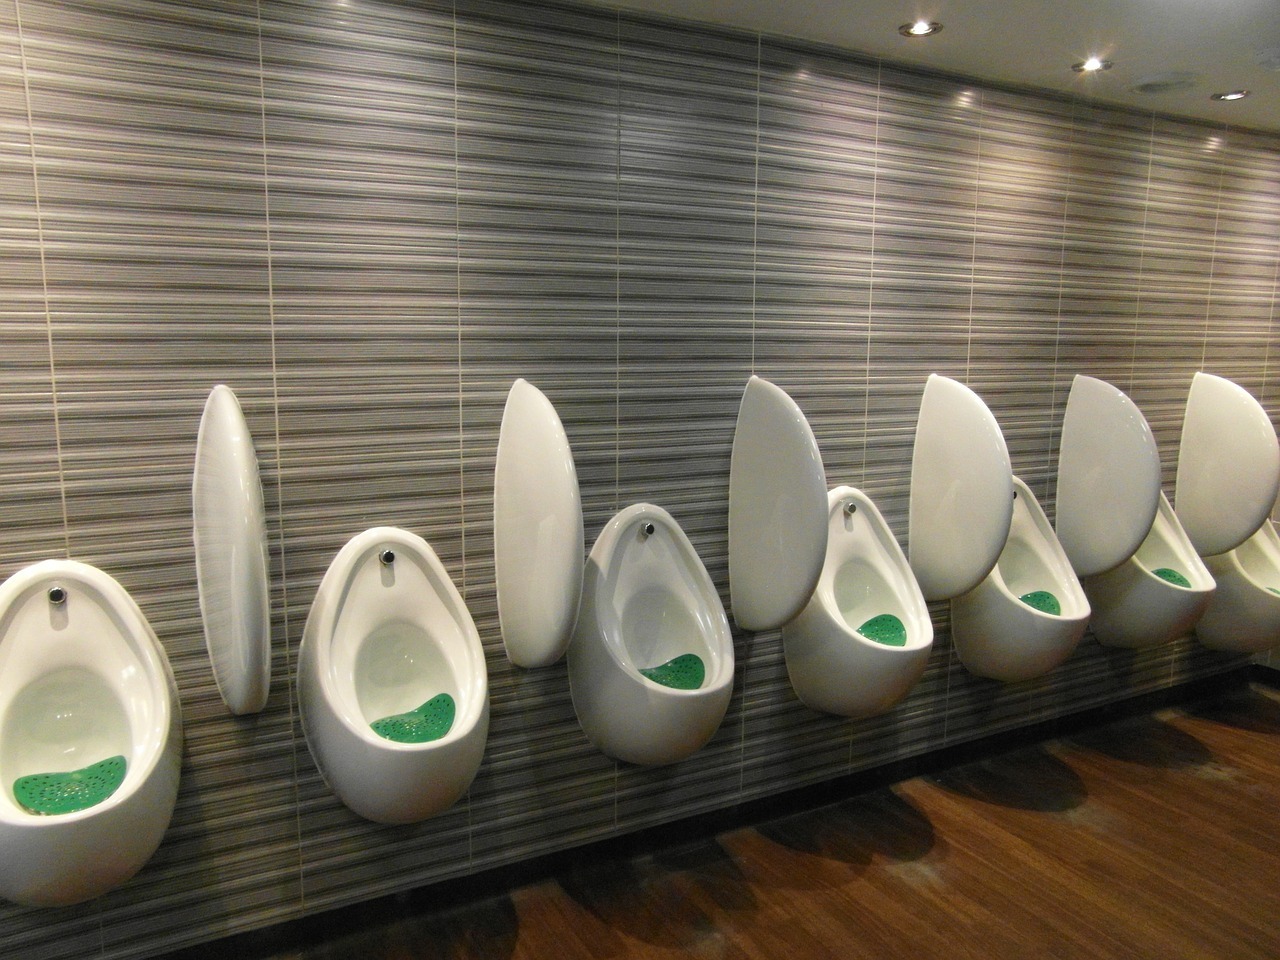 multiple urinals